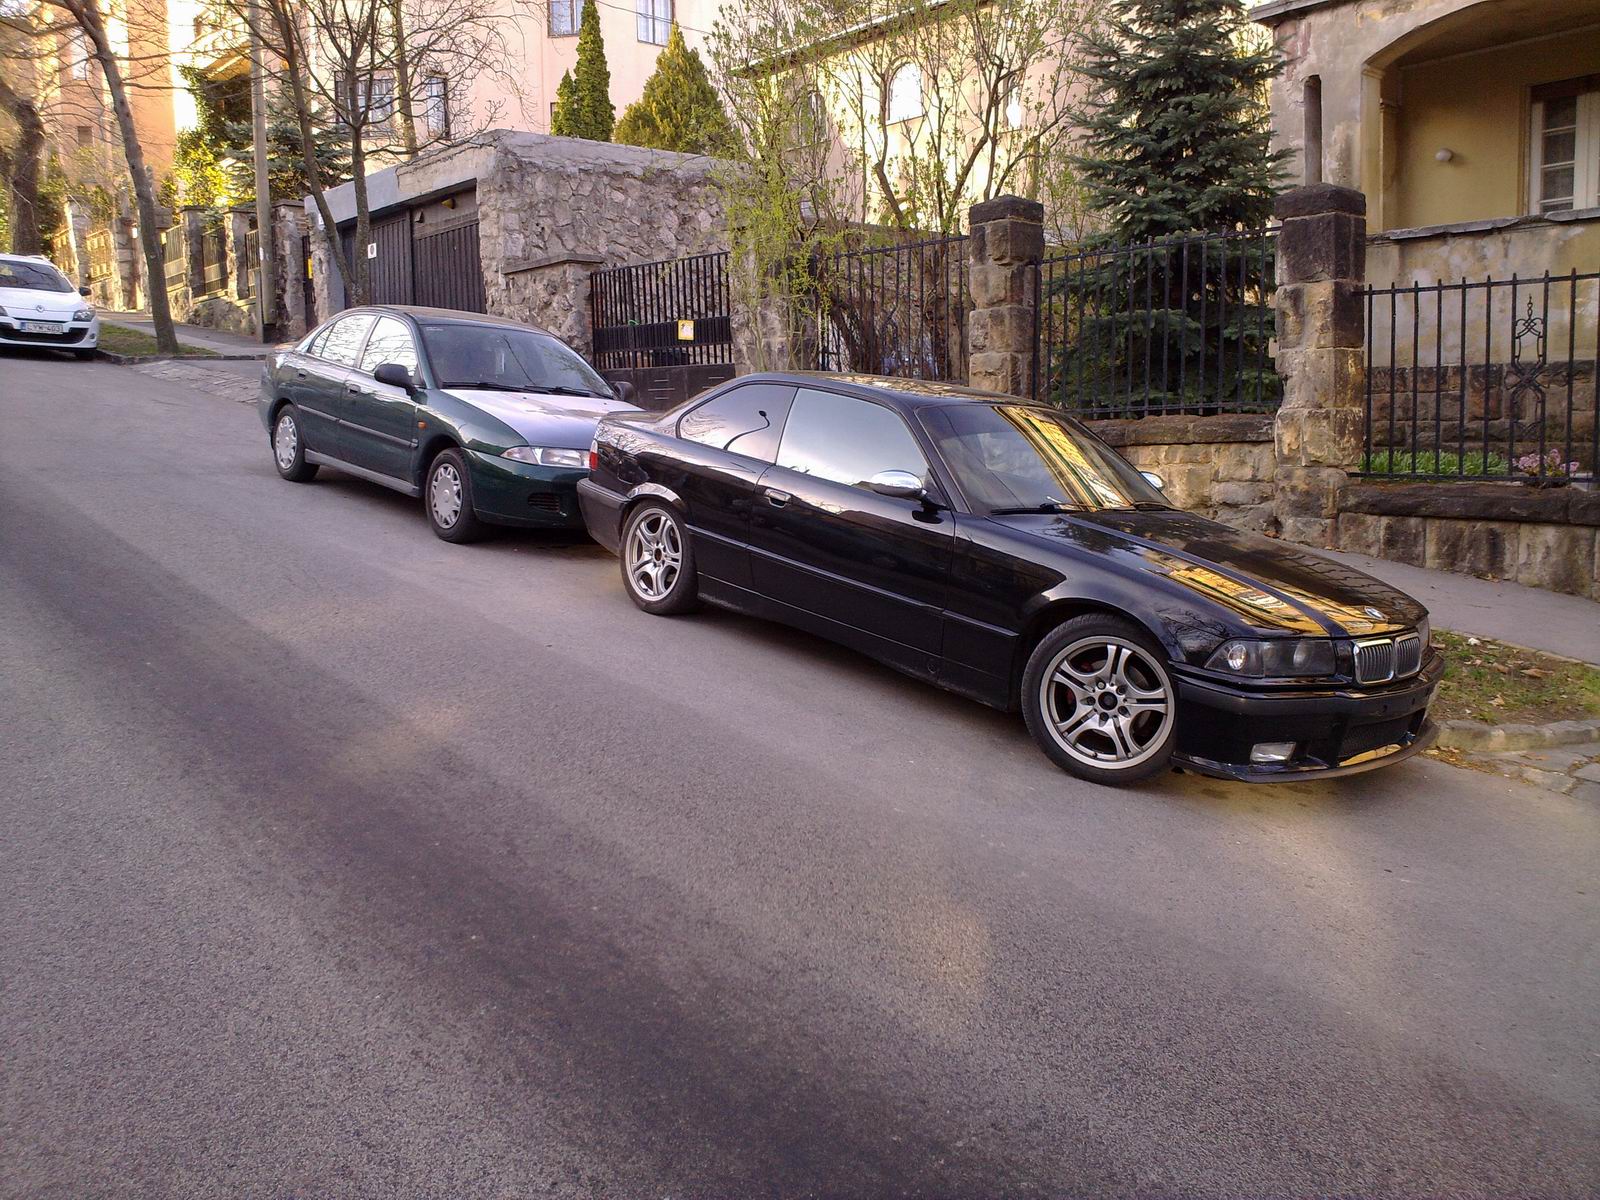 BMW 325is & Micu Carisma